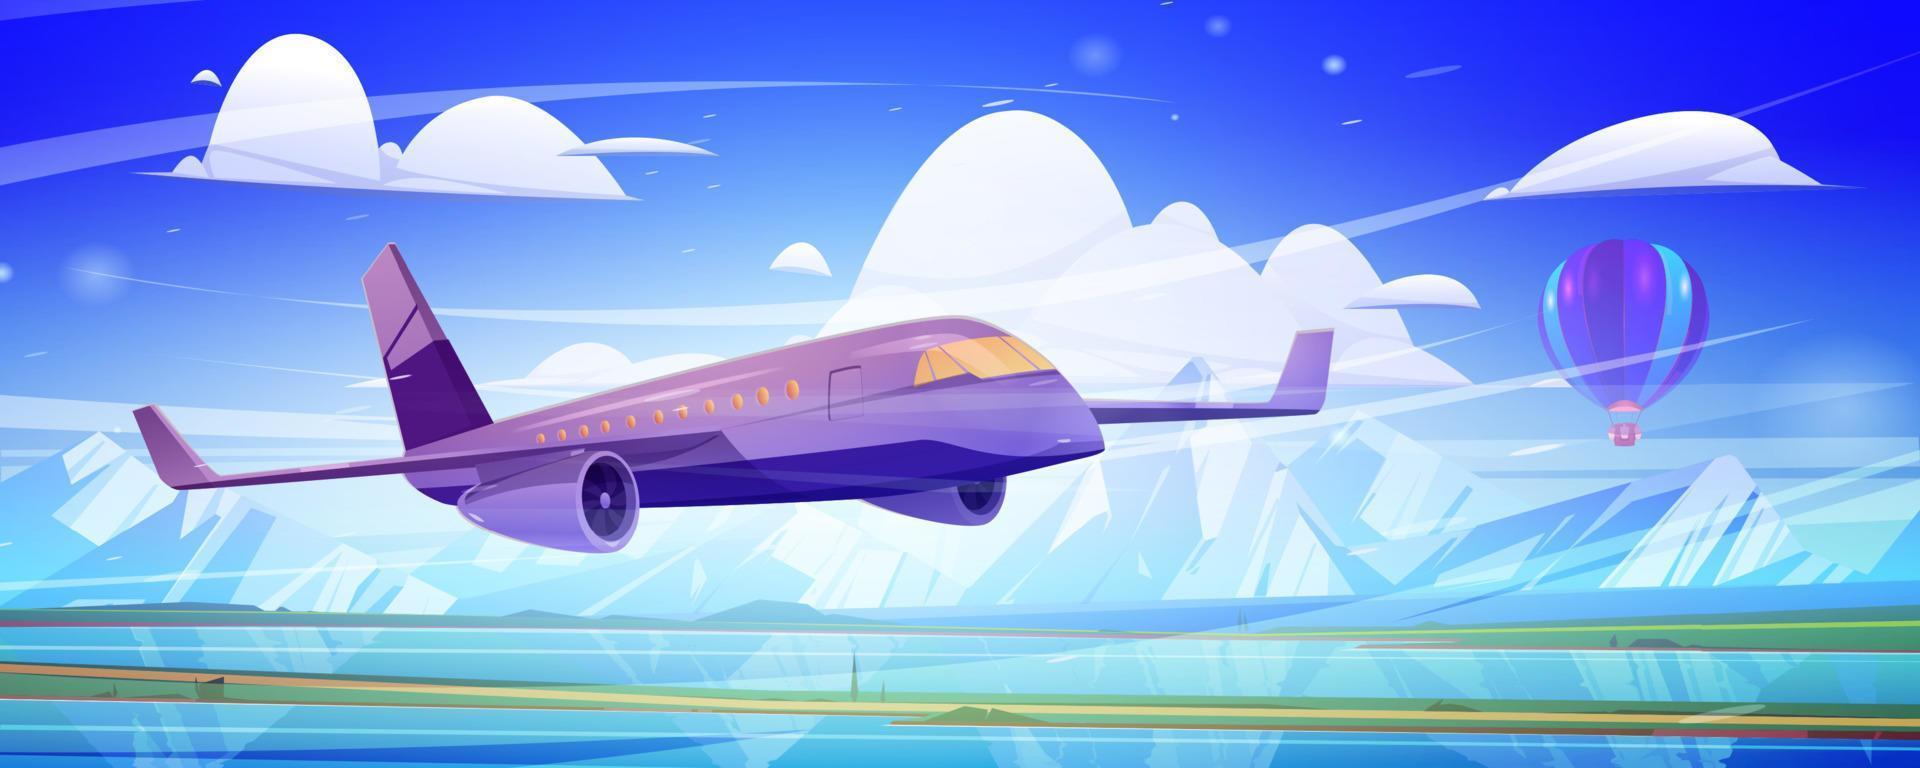 Flugzeug fliegt im blauen Himmel mit Wolken vektor